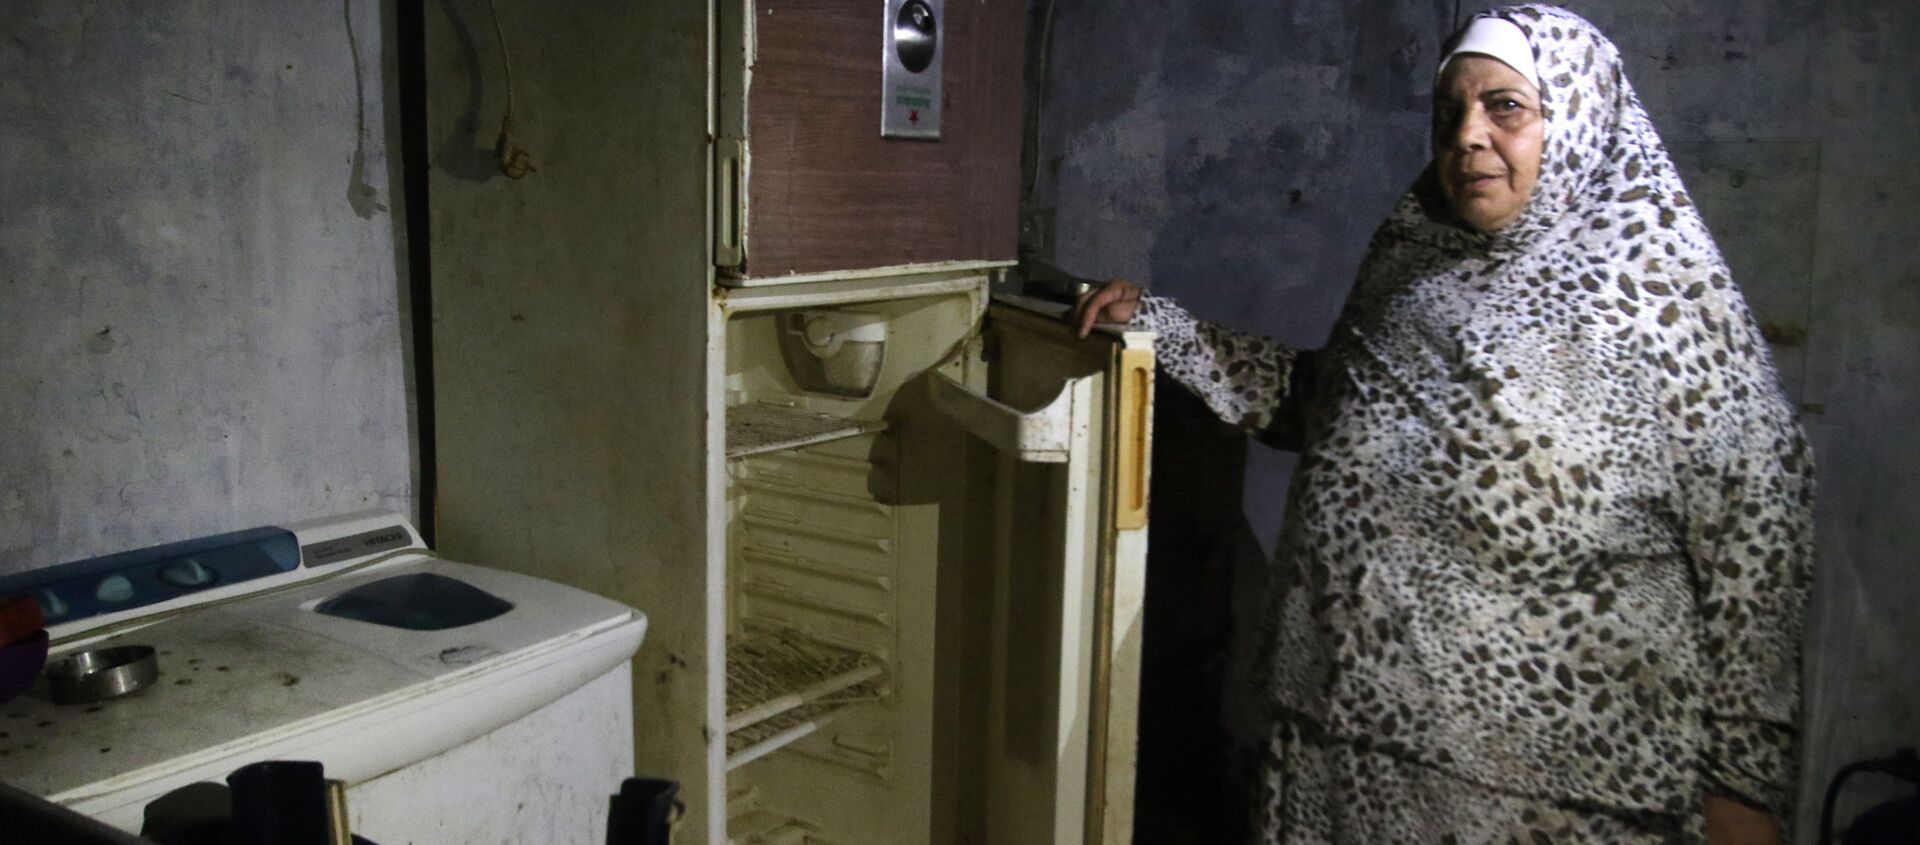 Lübnan'da AFP'nin ziyaret ettiği Sayda kenti sakini bir kadın, buzdolabını açarak içinin bomboş olduğunu gösterdi. - Sputnik Türkiye, 1920, 24.06.2020